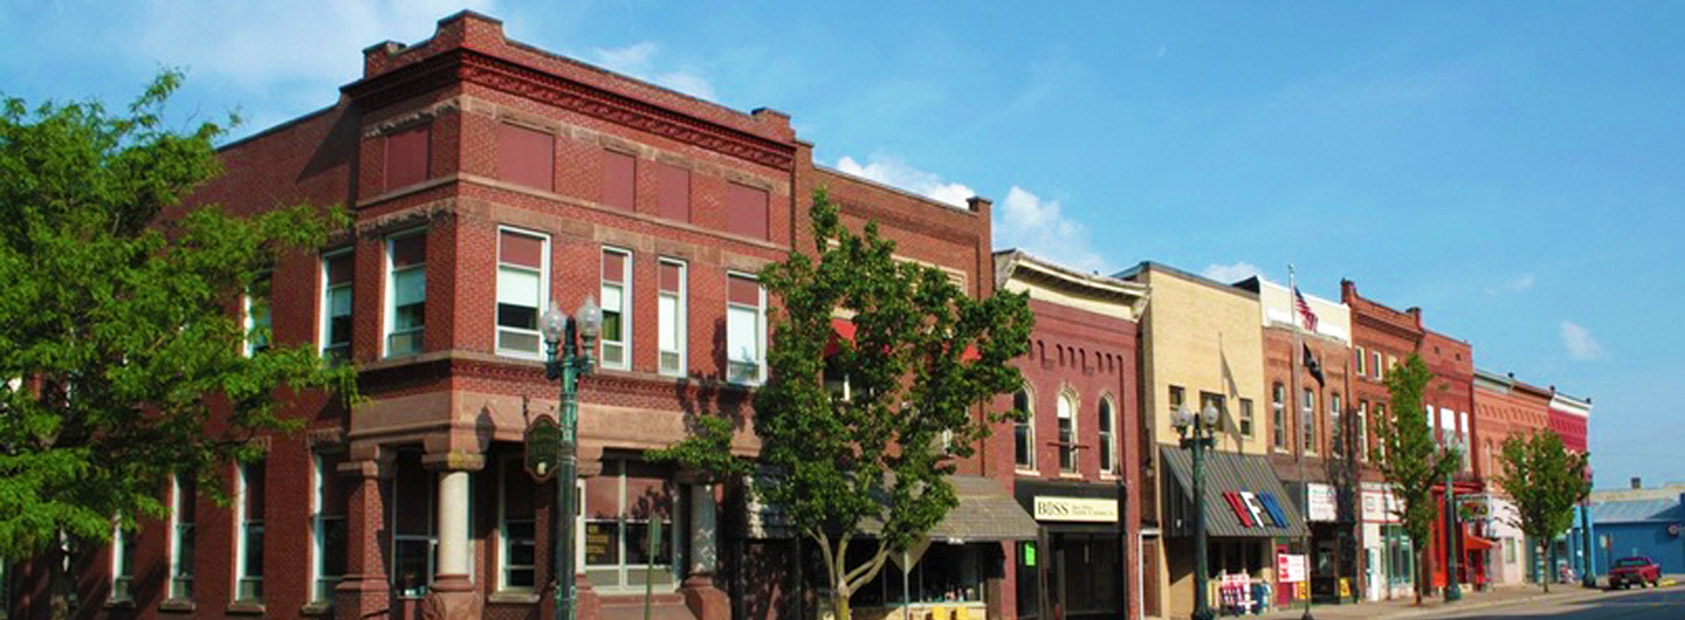 Large photo of historic downtown Savanna, Illinois